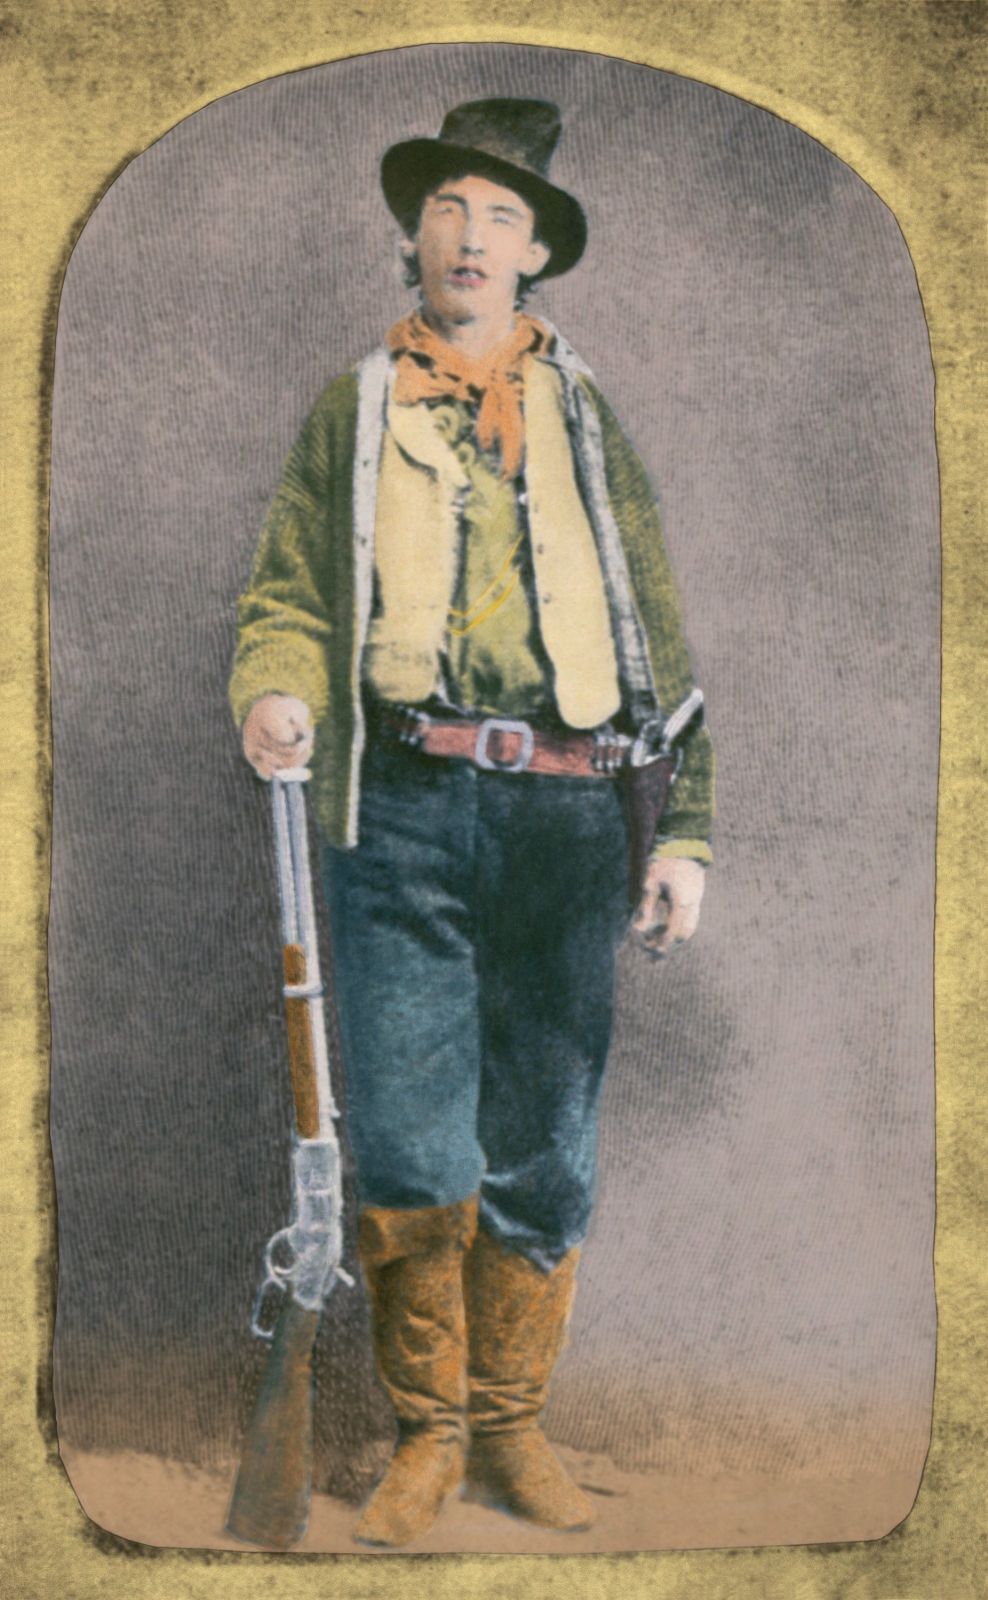 Billy the Kid žil život na plno, zemřel ale v pouhých 21 letech.